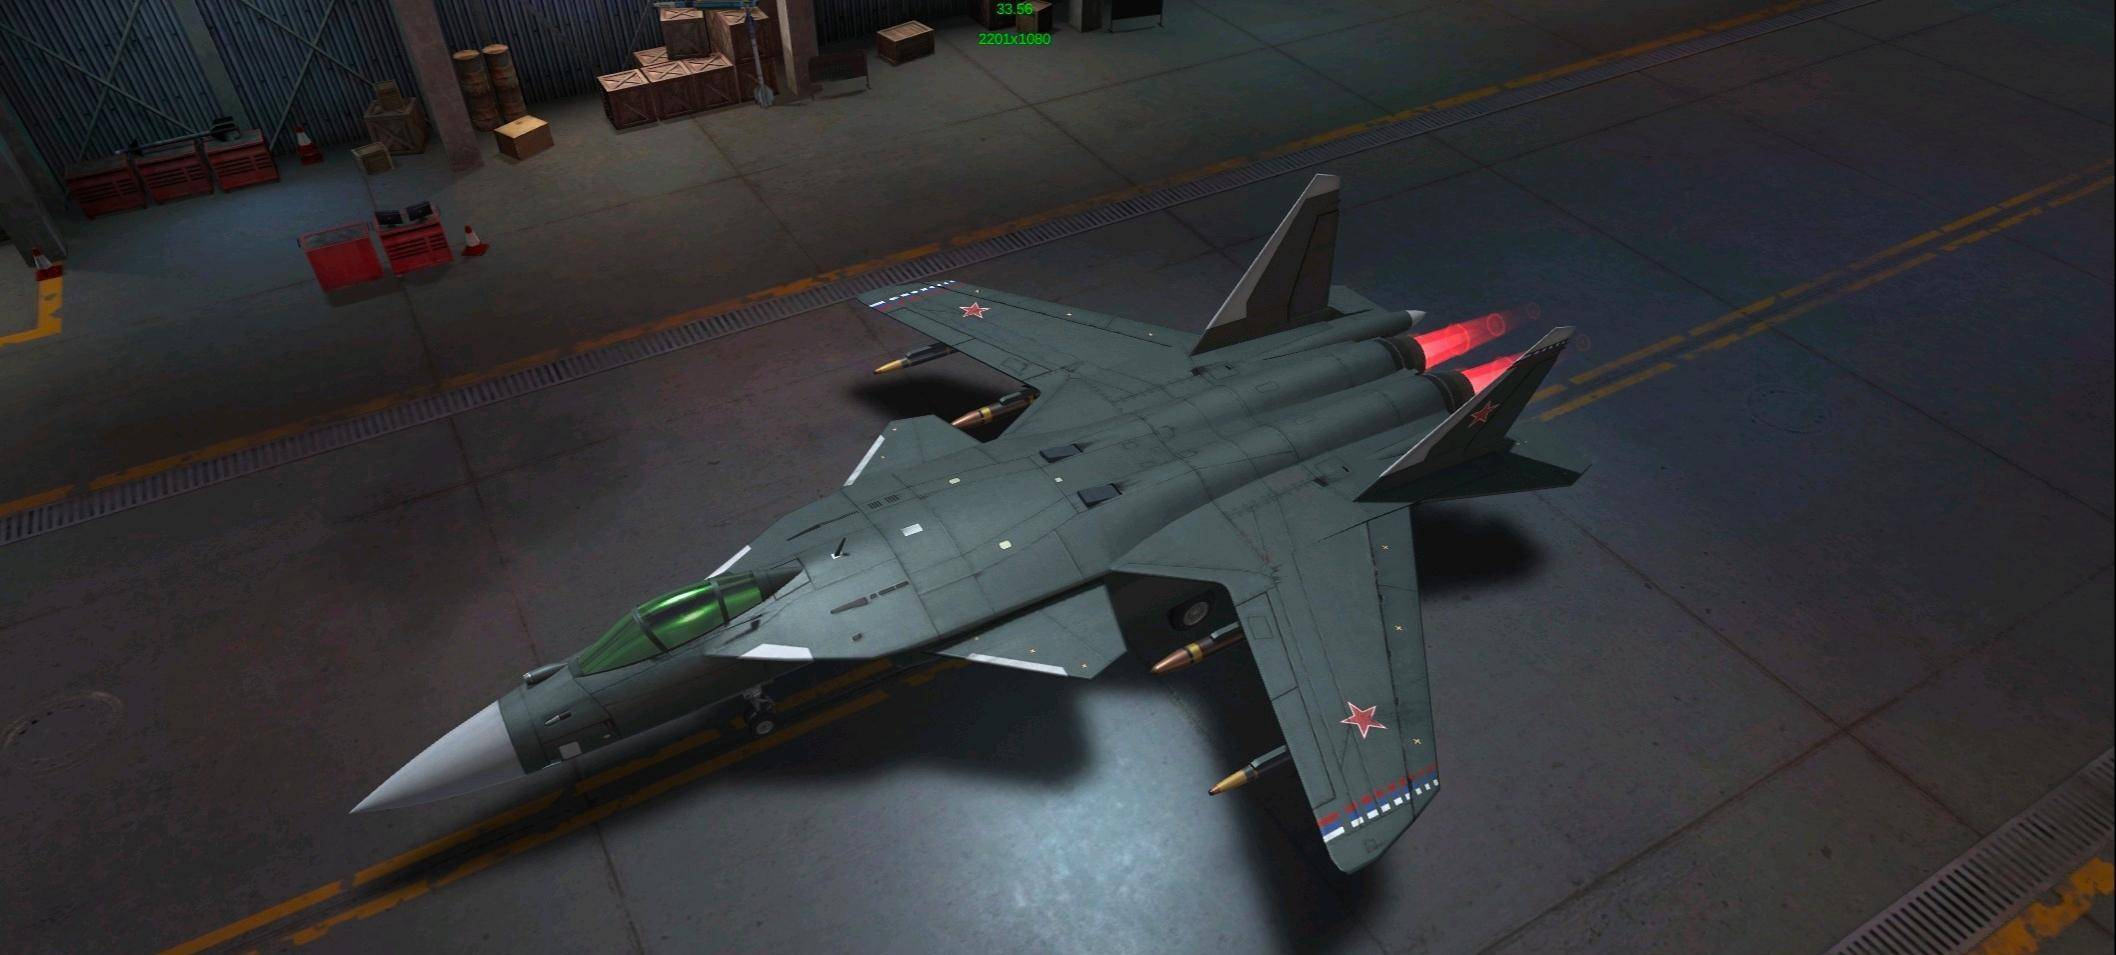 原创苏47金雕战斗机,前掠翼设计科幻无比,为何不堪大用?